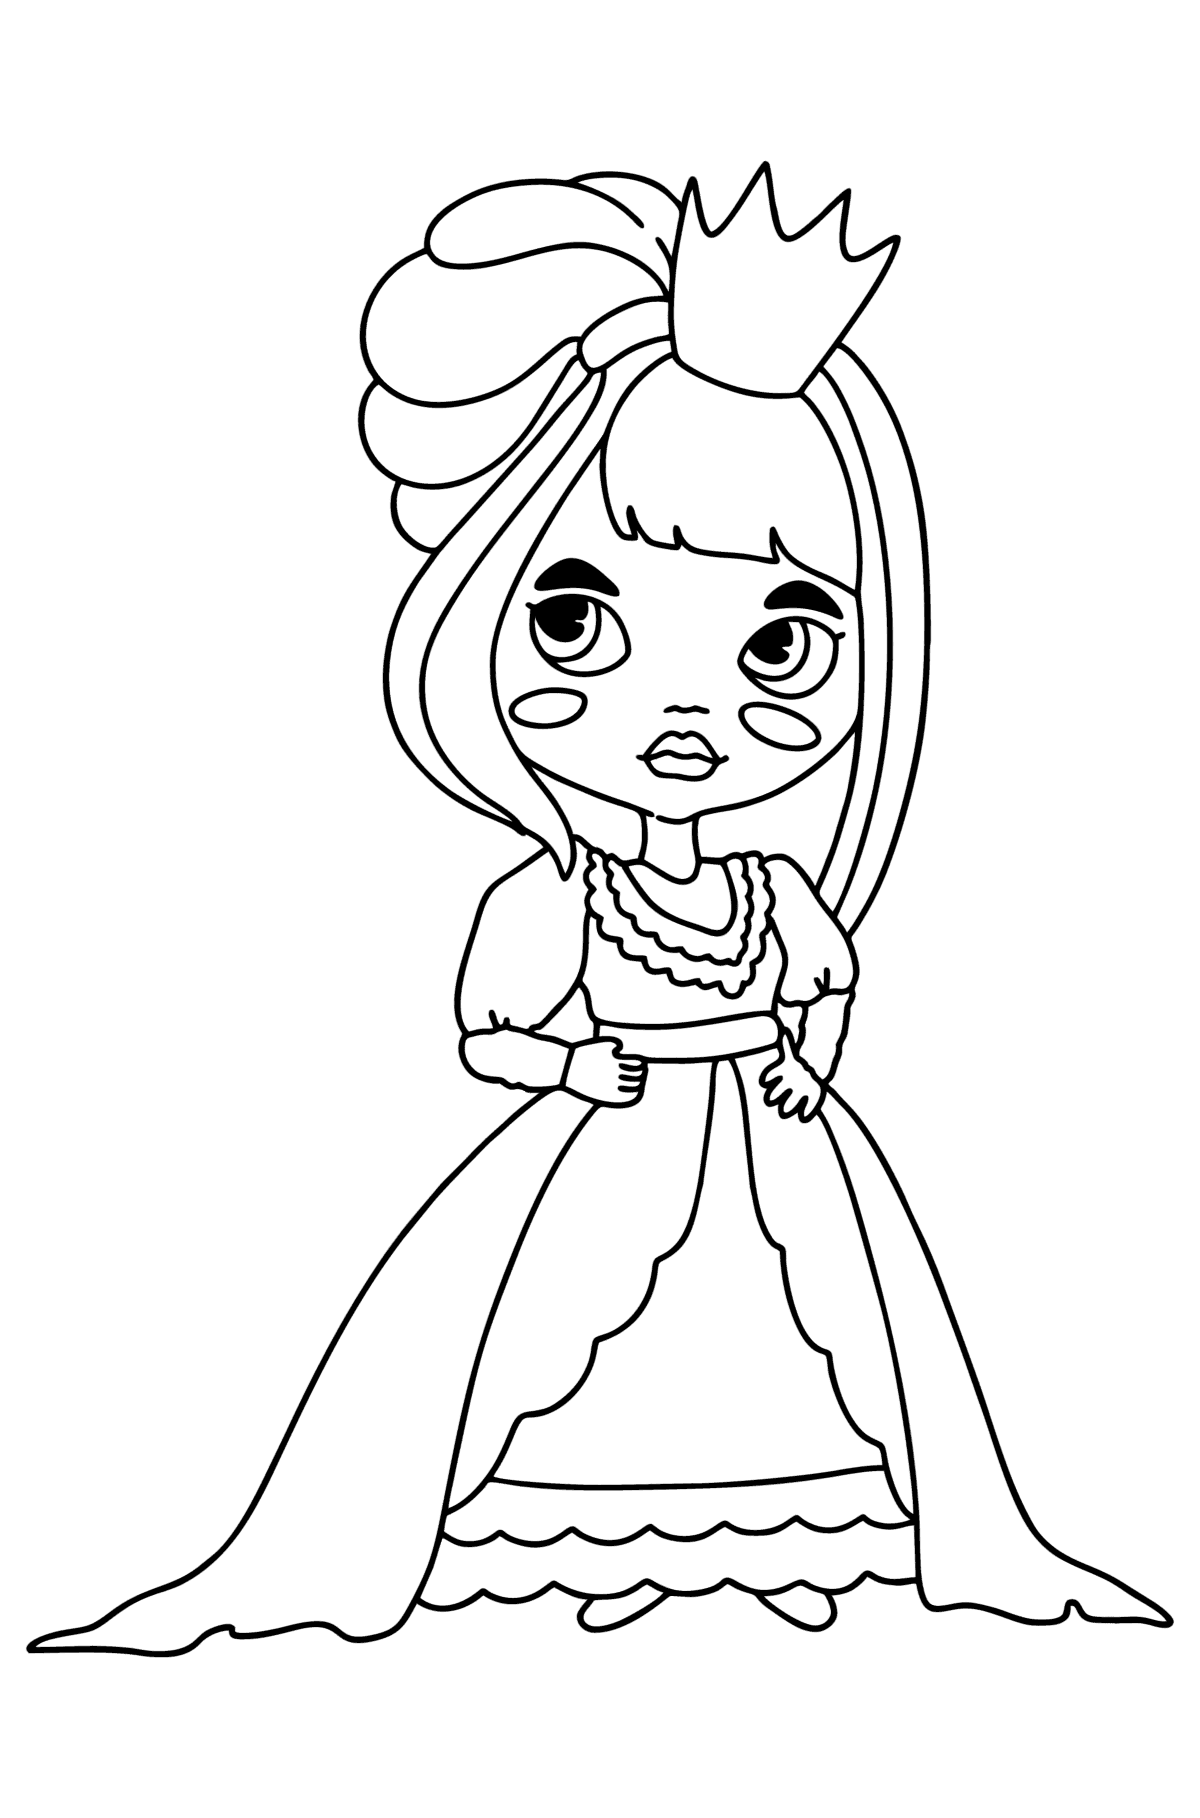 Prinzessin in einem hellen Kleid ausmalbild - Malvorlagen für Kinder